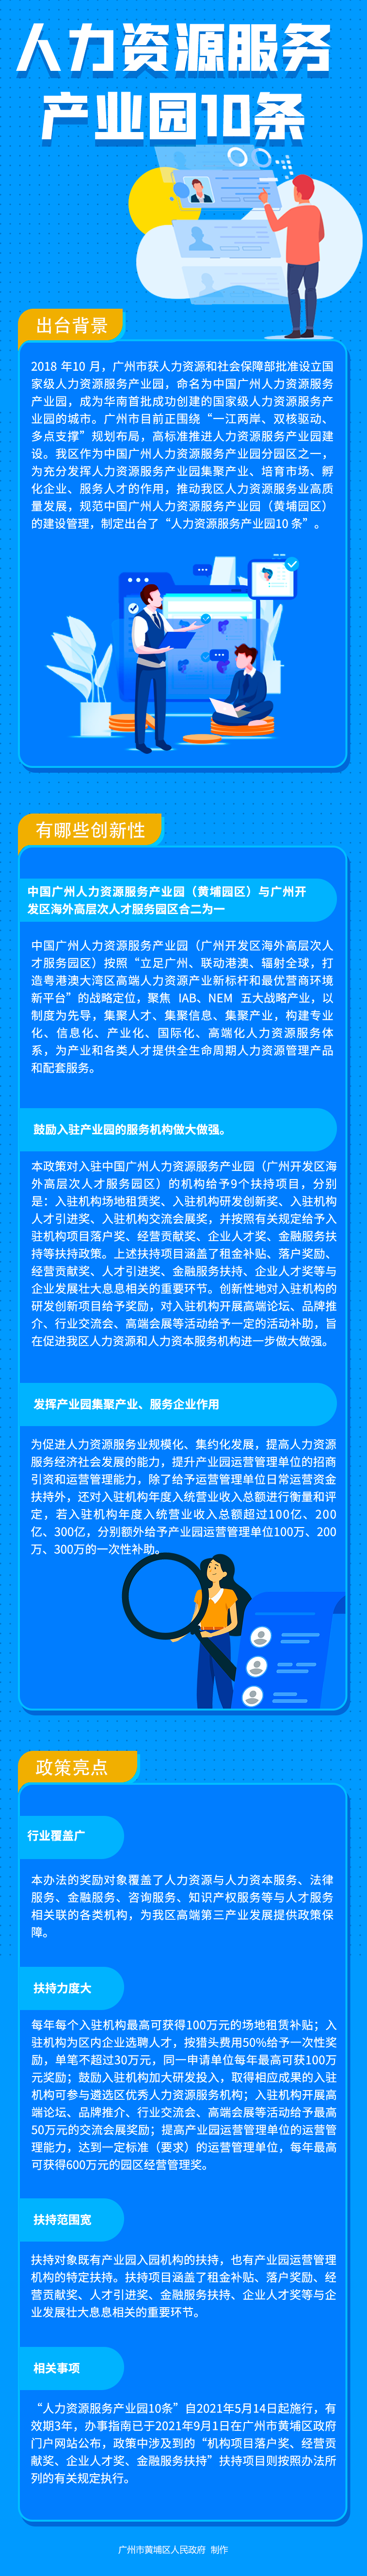 jing-人力资源服务 产业园10条 拷贝(1).png